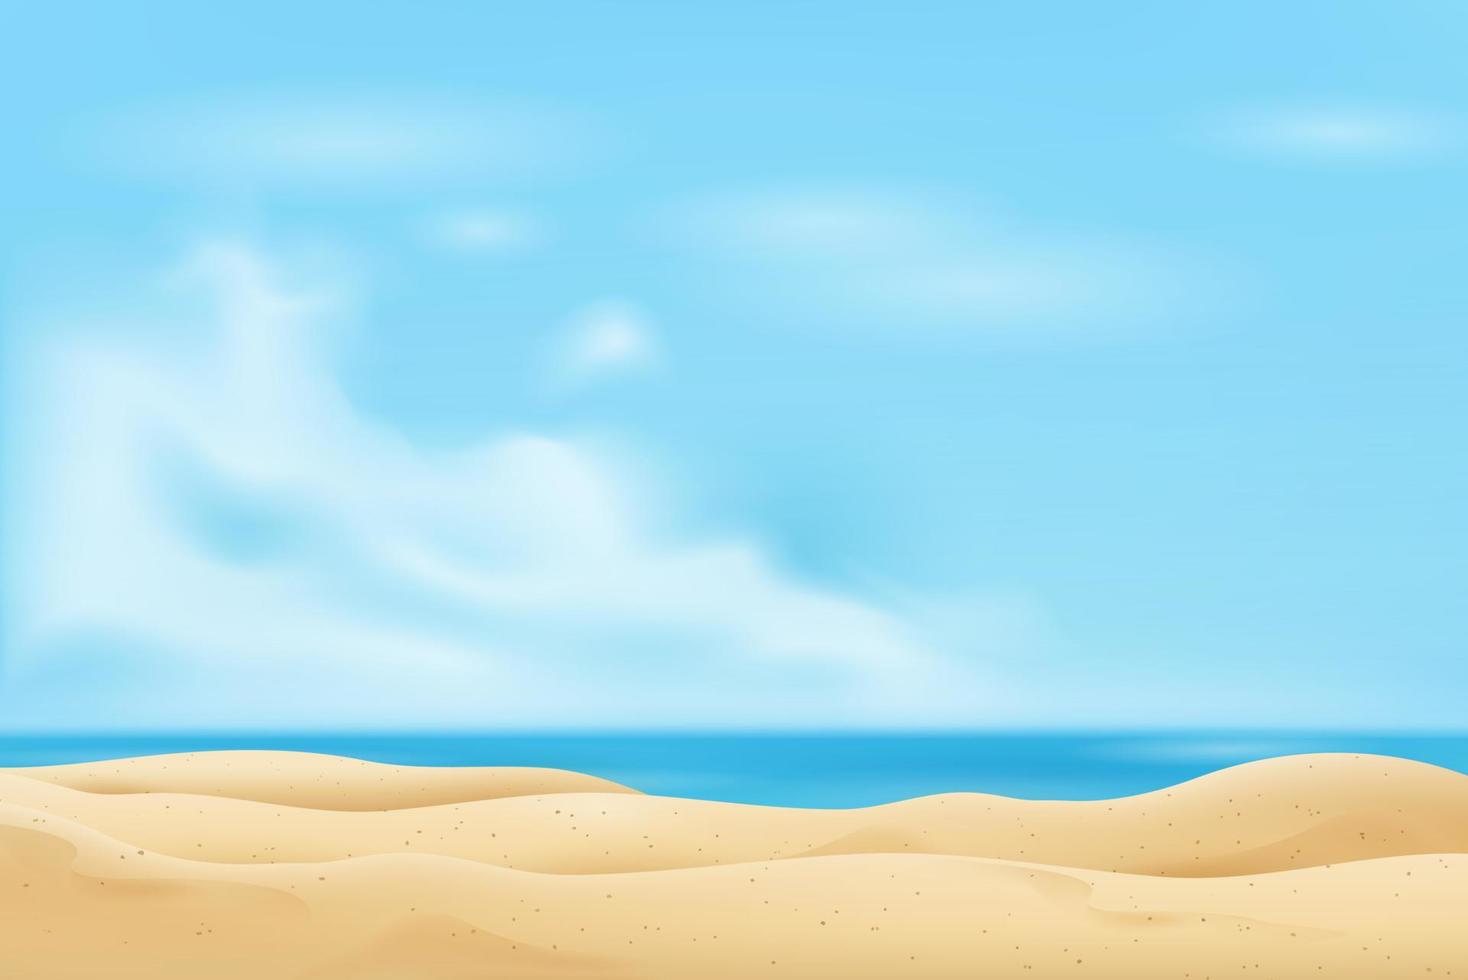 plage de sable vide en été fond de ciel bleu frais vecteur